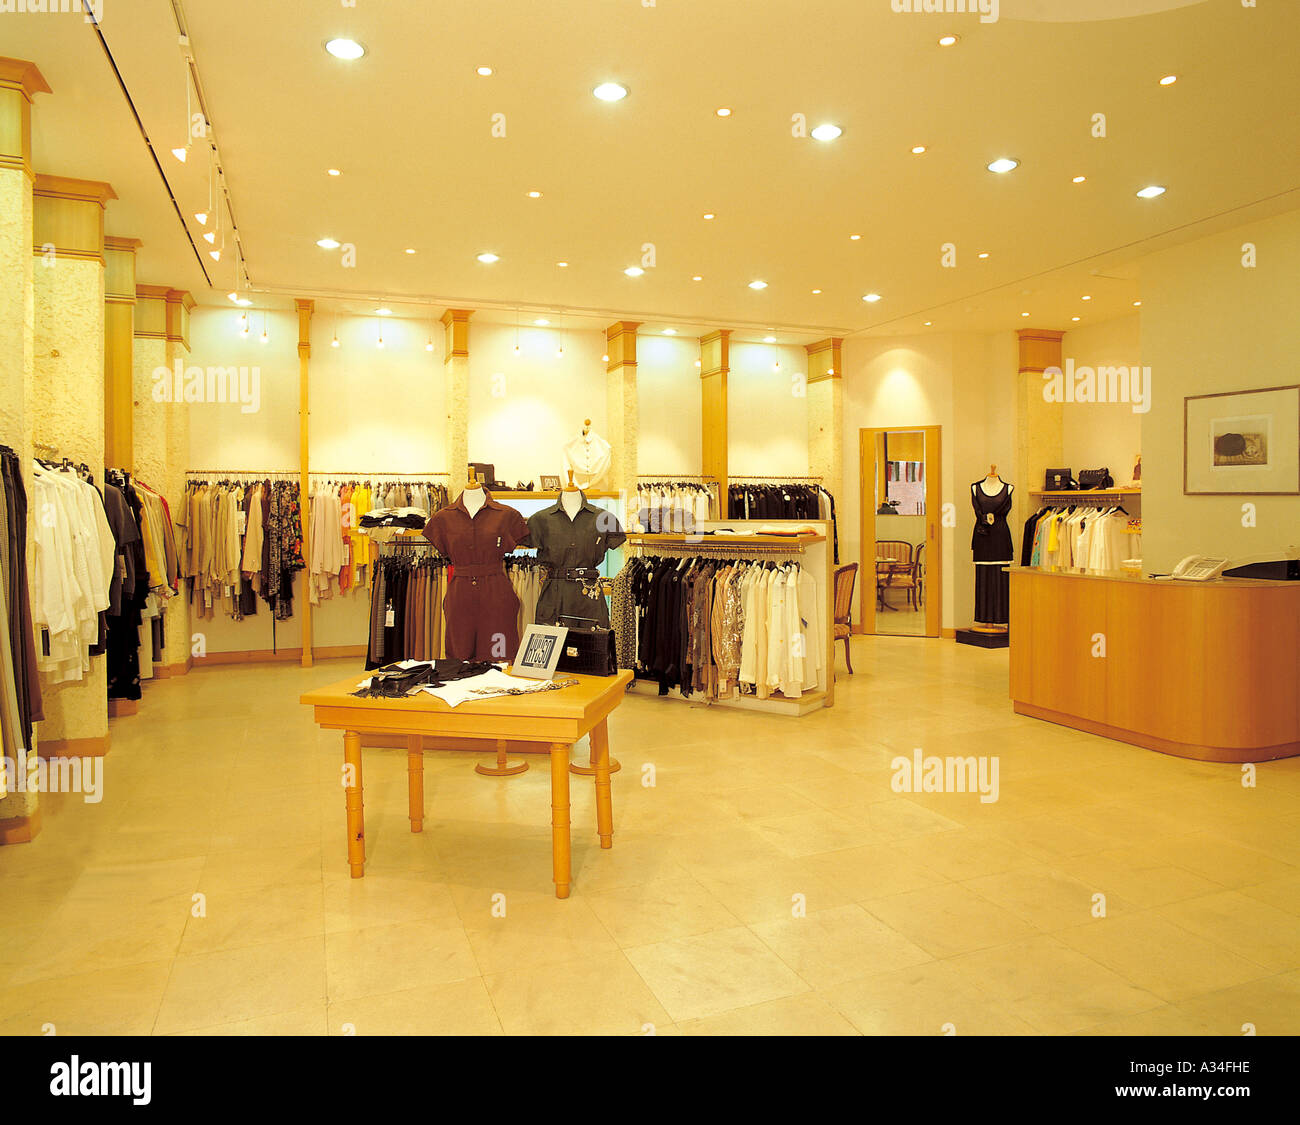 Negozio di abbigliamento,shop interno,dress,stoffa,vestiti,displ Foto Stock